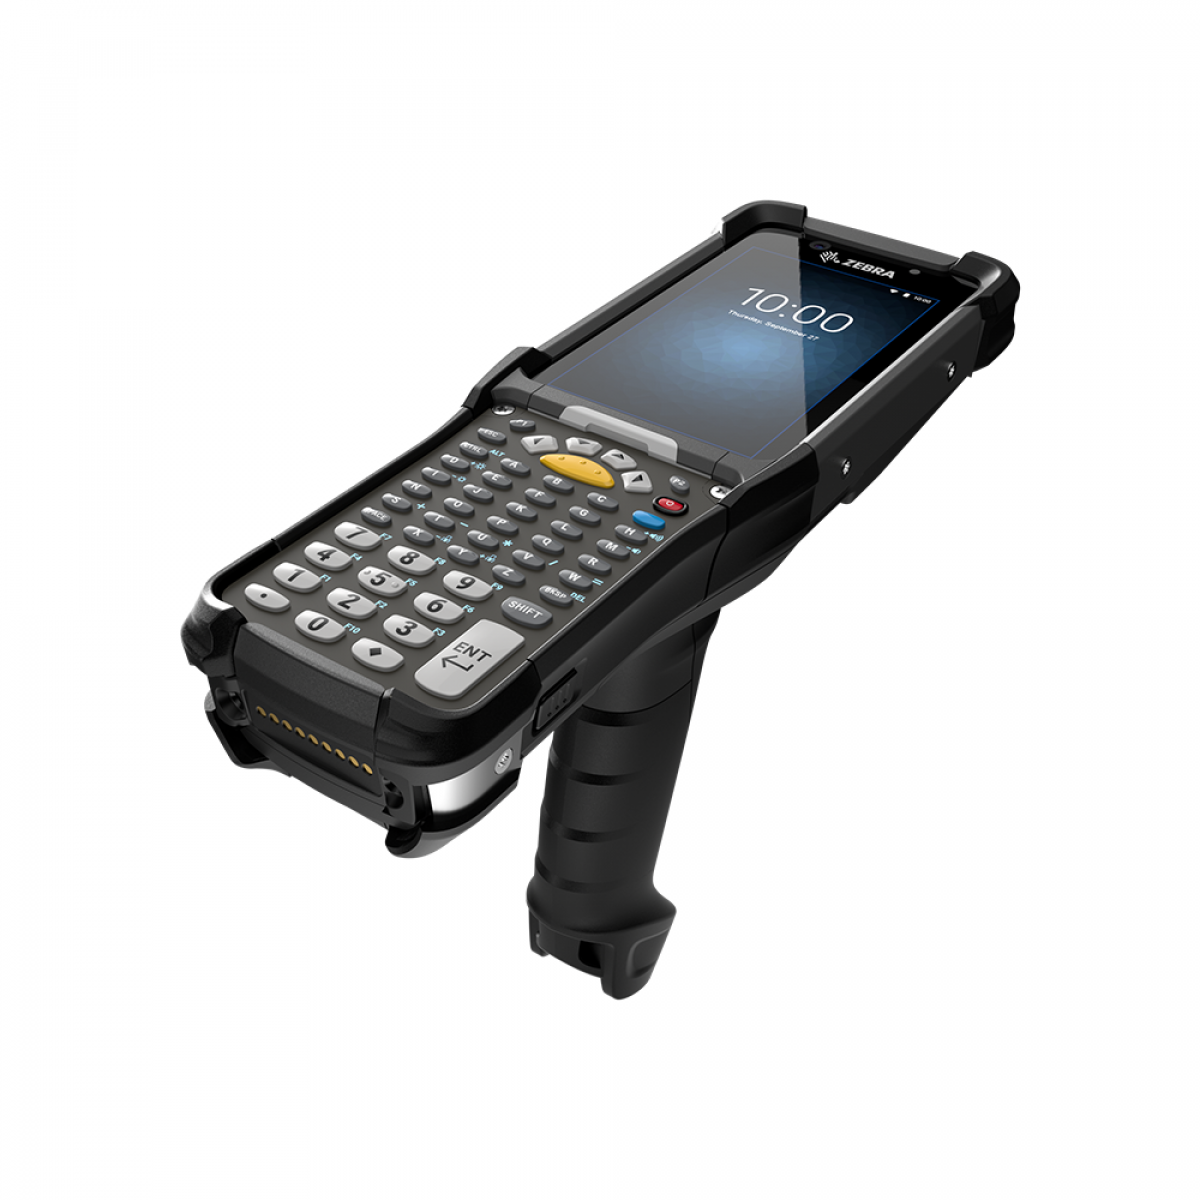 Zebra MC9300 handheld mobile computer with pistol grip